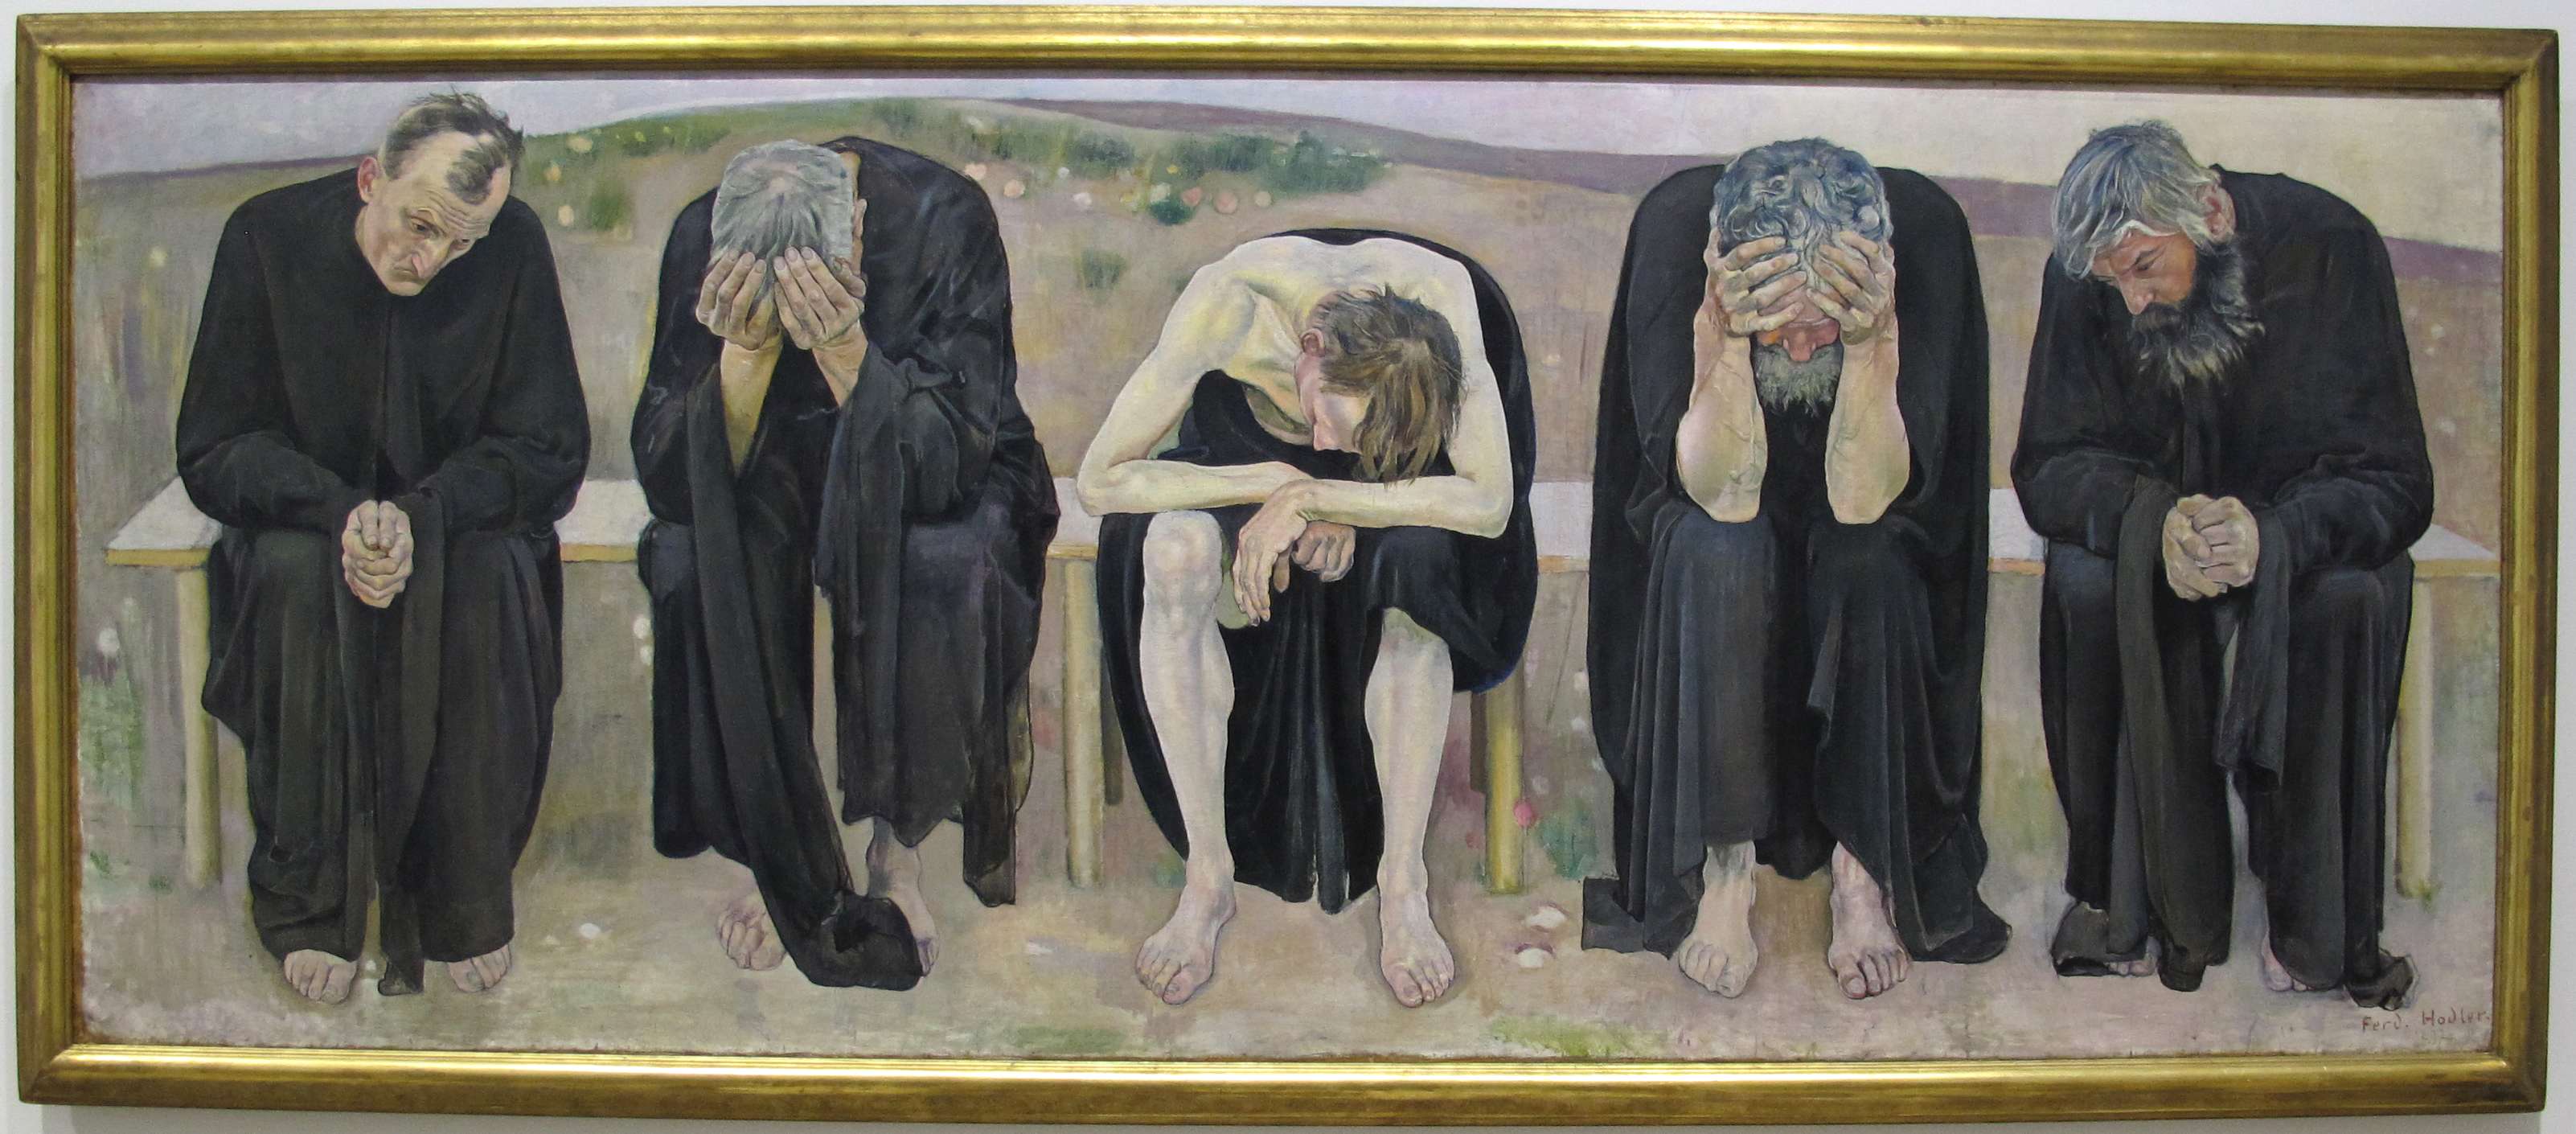 Φέρντιναντ Χόντλερ (Ferdinand Hodler, Βέρνη, 14 Μαρτίου 1853 - Γενεύη, 19 Μαΐου 1918). Οι απελπισμένες ψυχές, 1892, Βέρνη, Kunstmuseum.